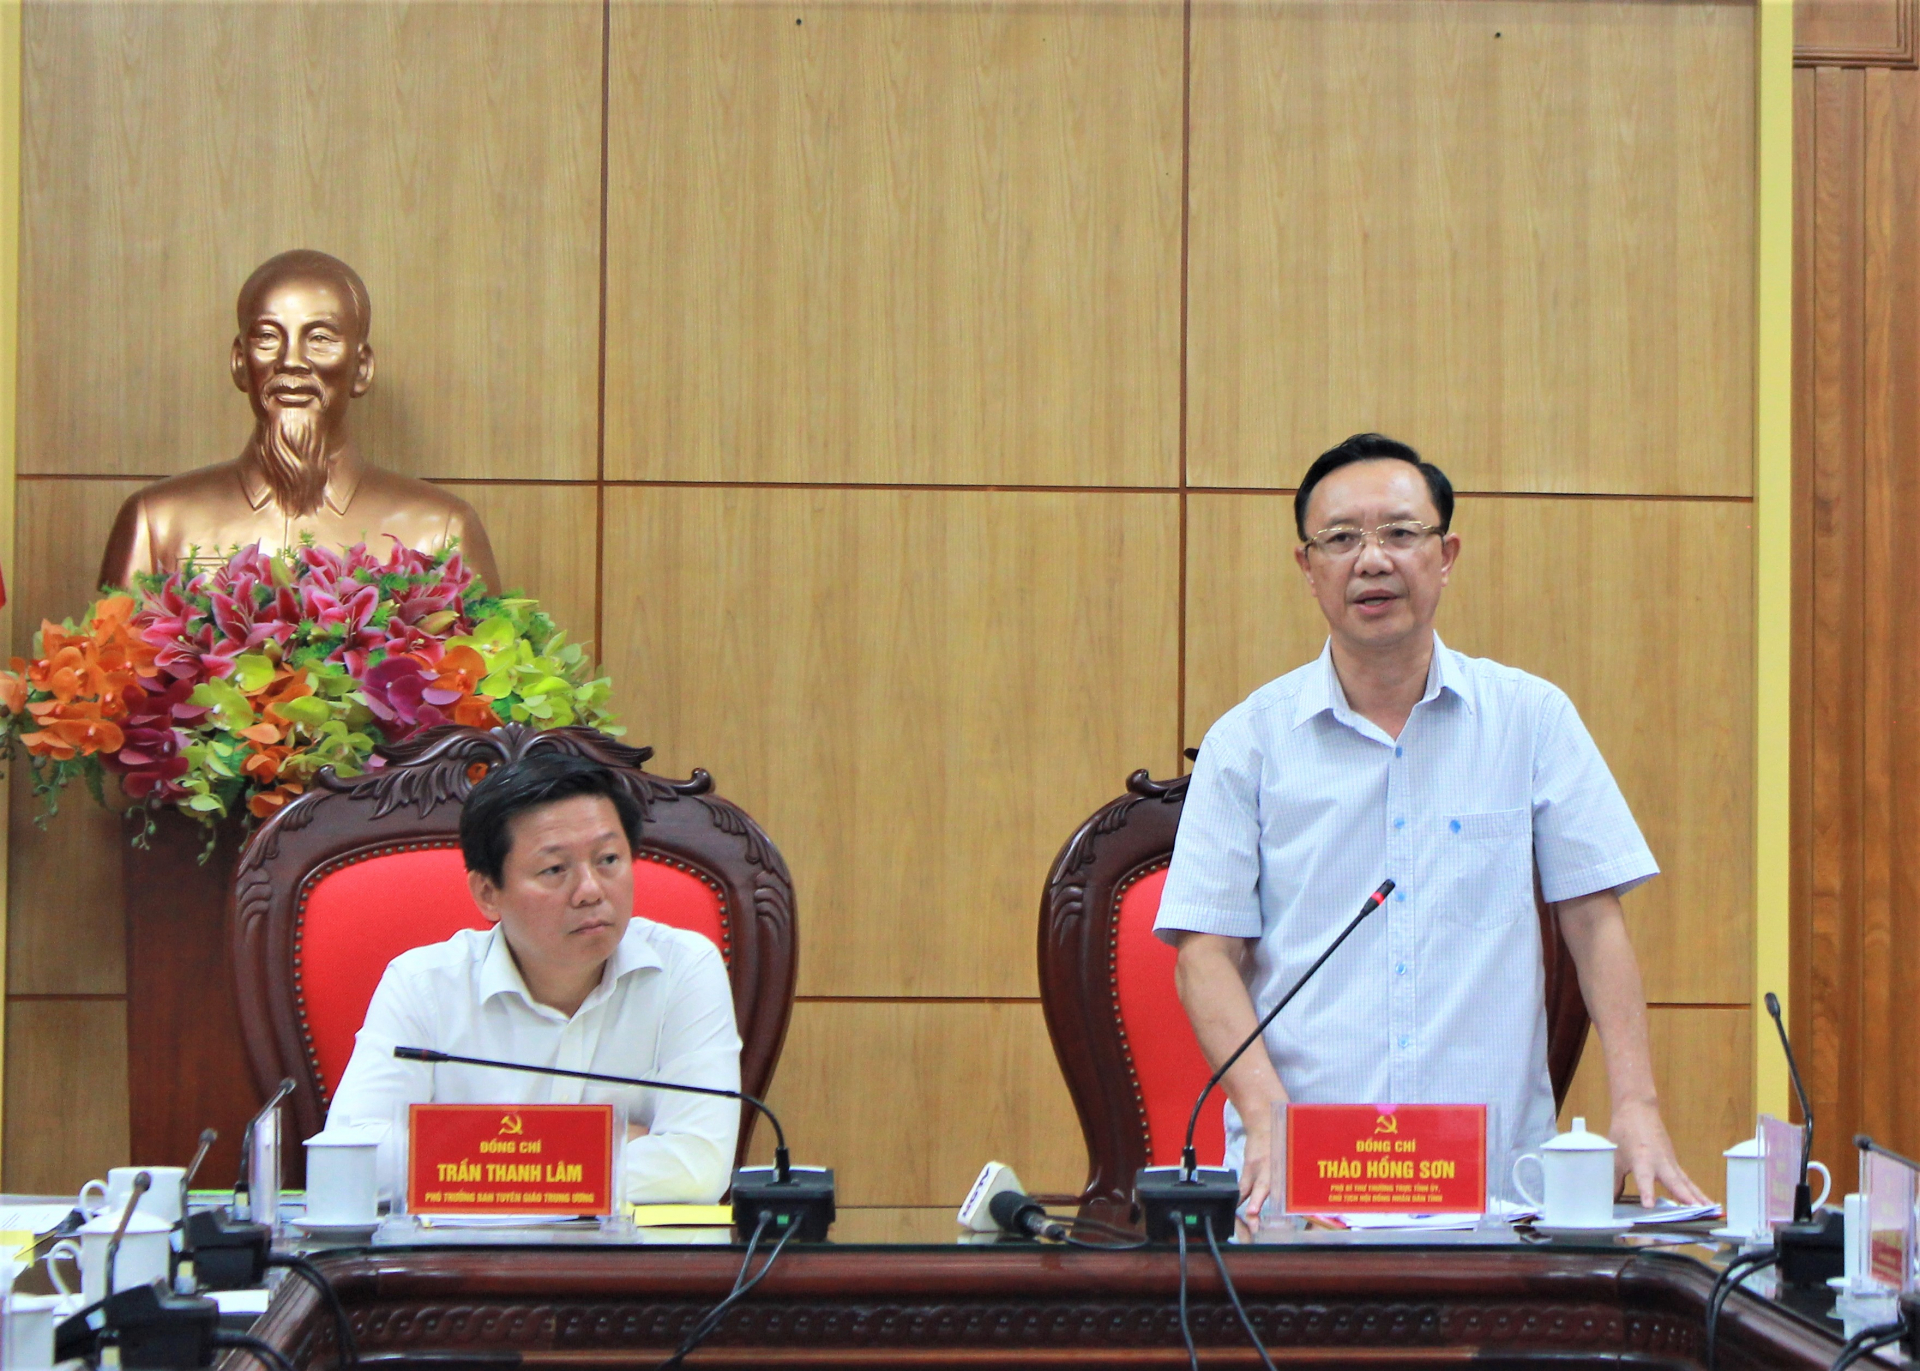 Phó Bí thư Thường trực Tỉnh ủy Thào Hồng Sơn phát biểu tại buổi làm việc